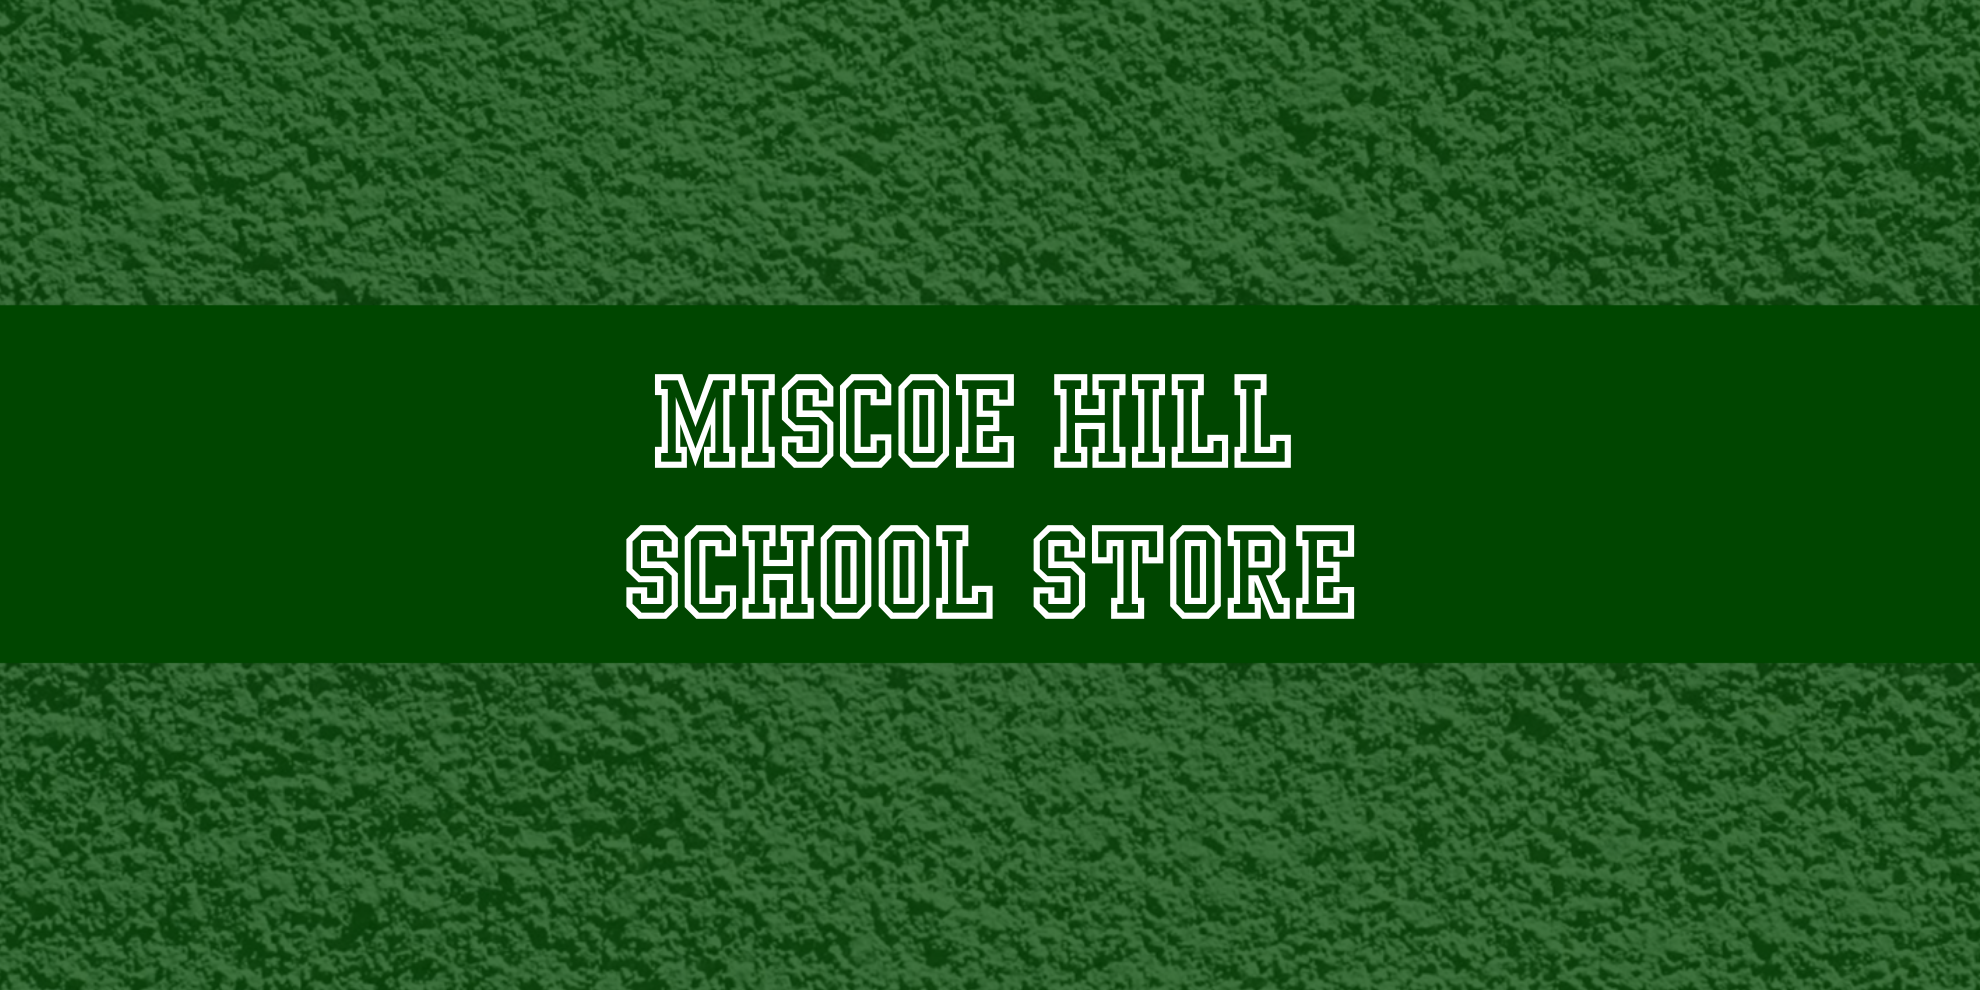 Miscoe School Store